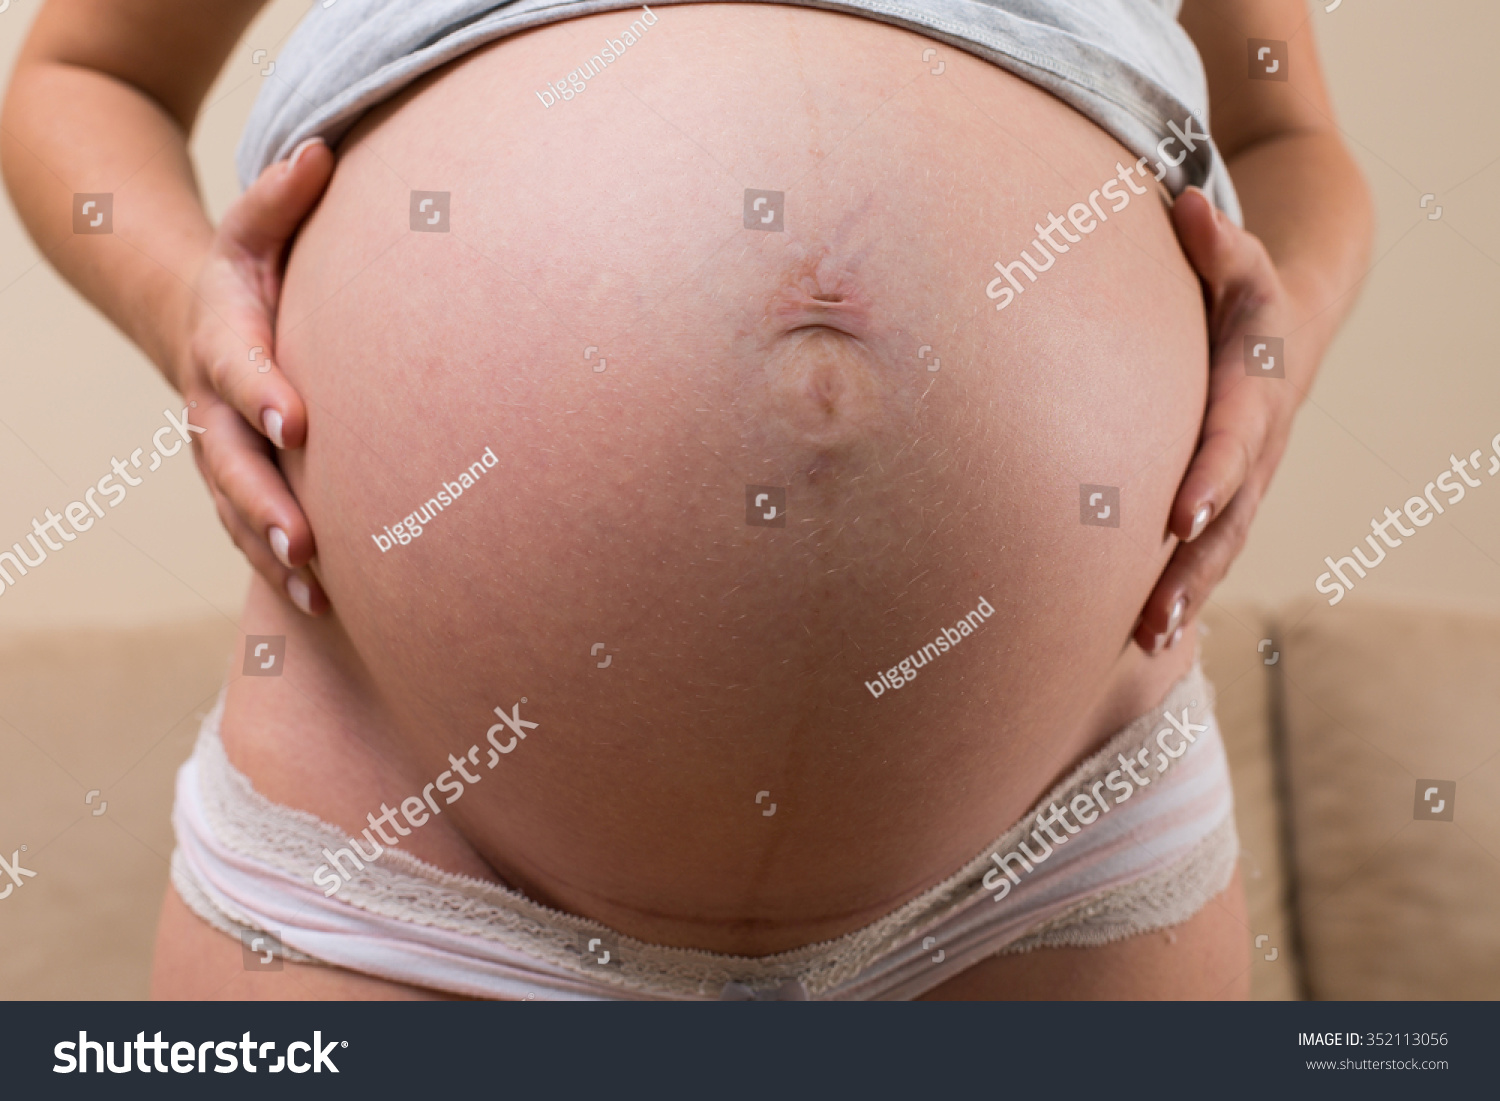 чешется грудь и соски при беременности фото 98